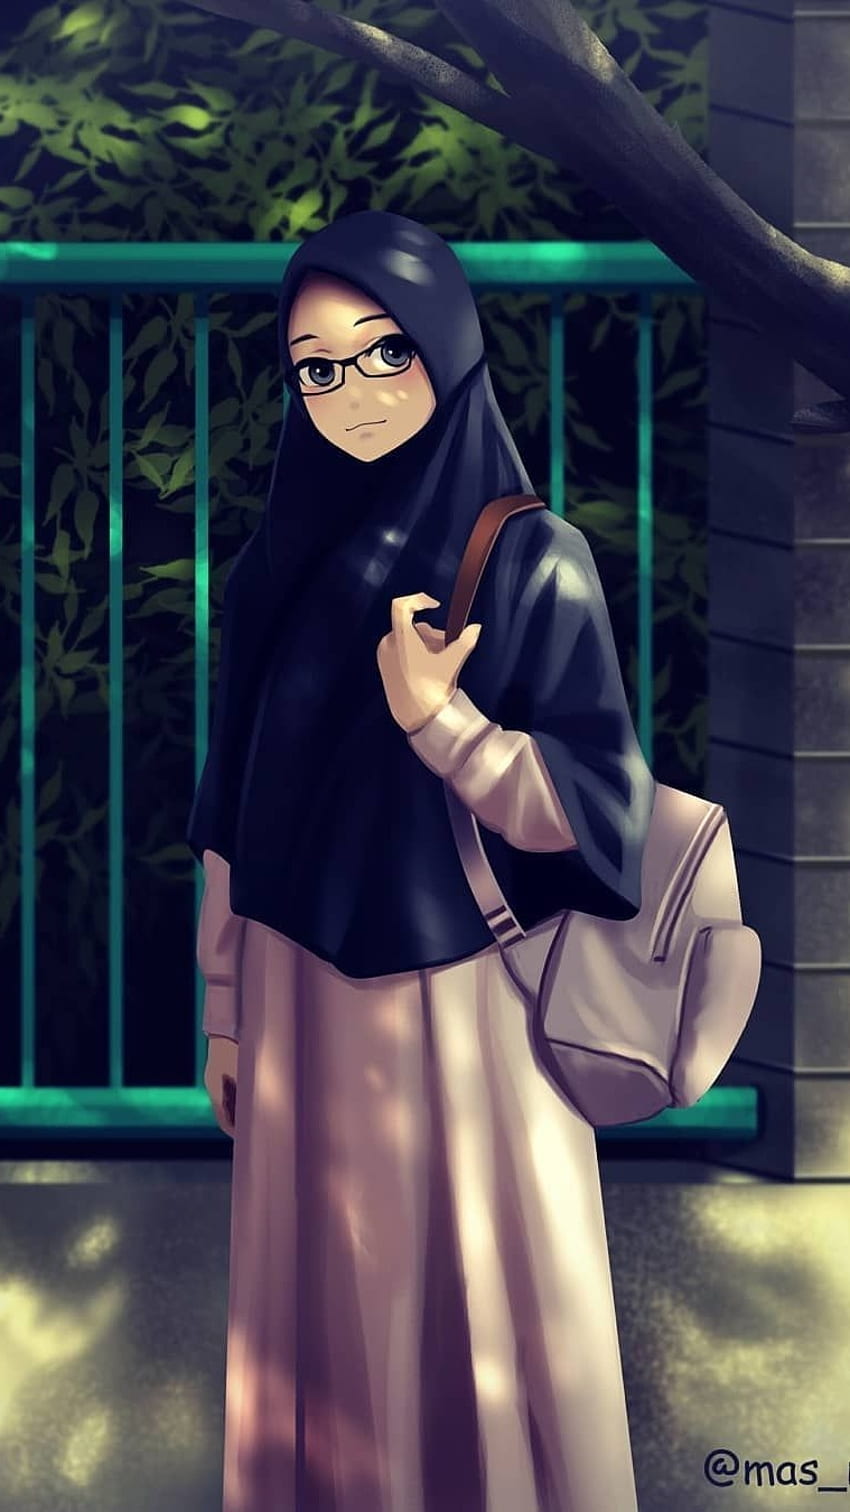 Pin by Asiyat on Hijab Cartoon Muslims